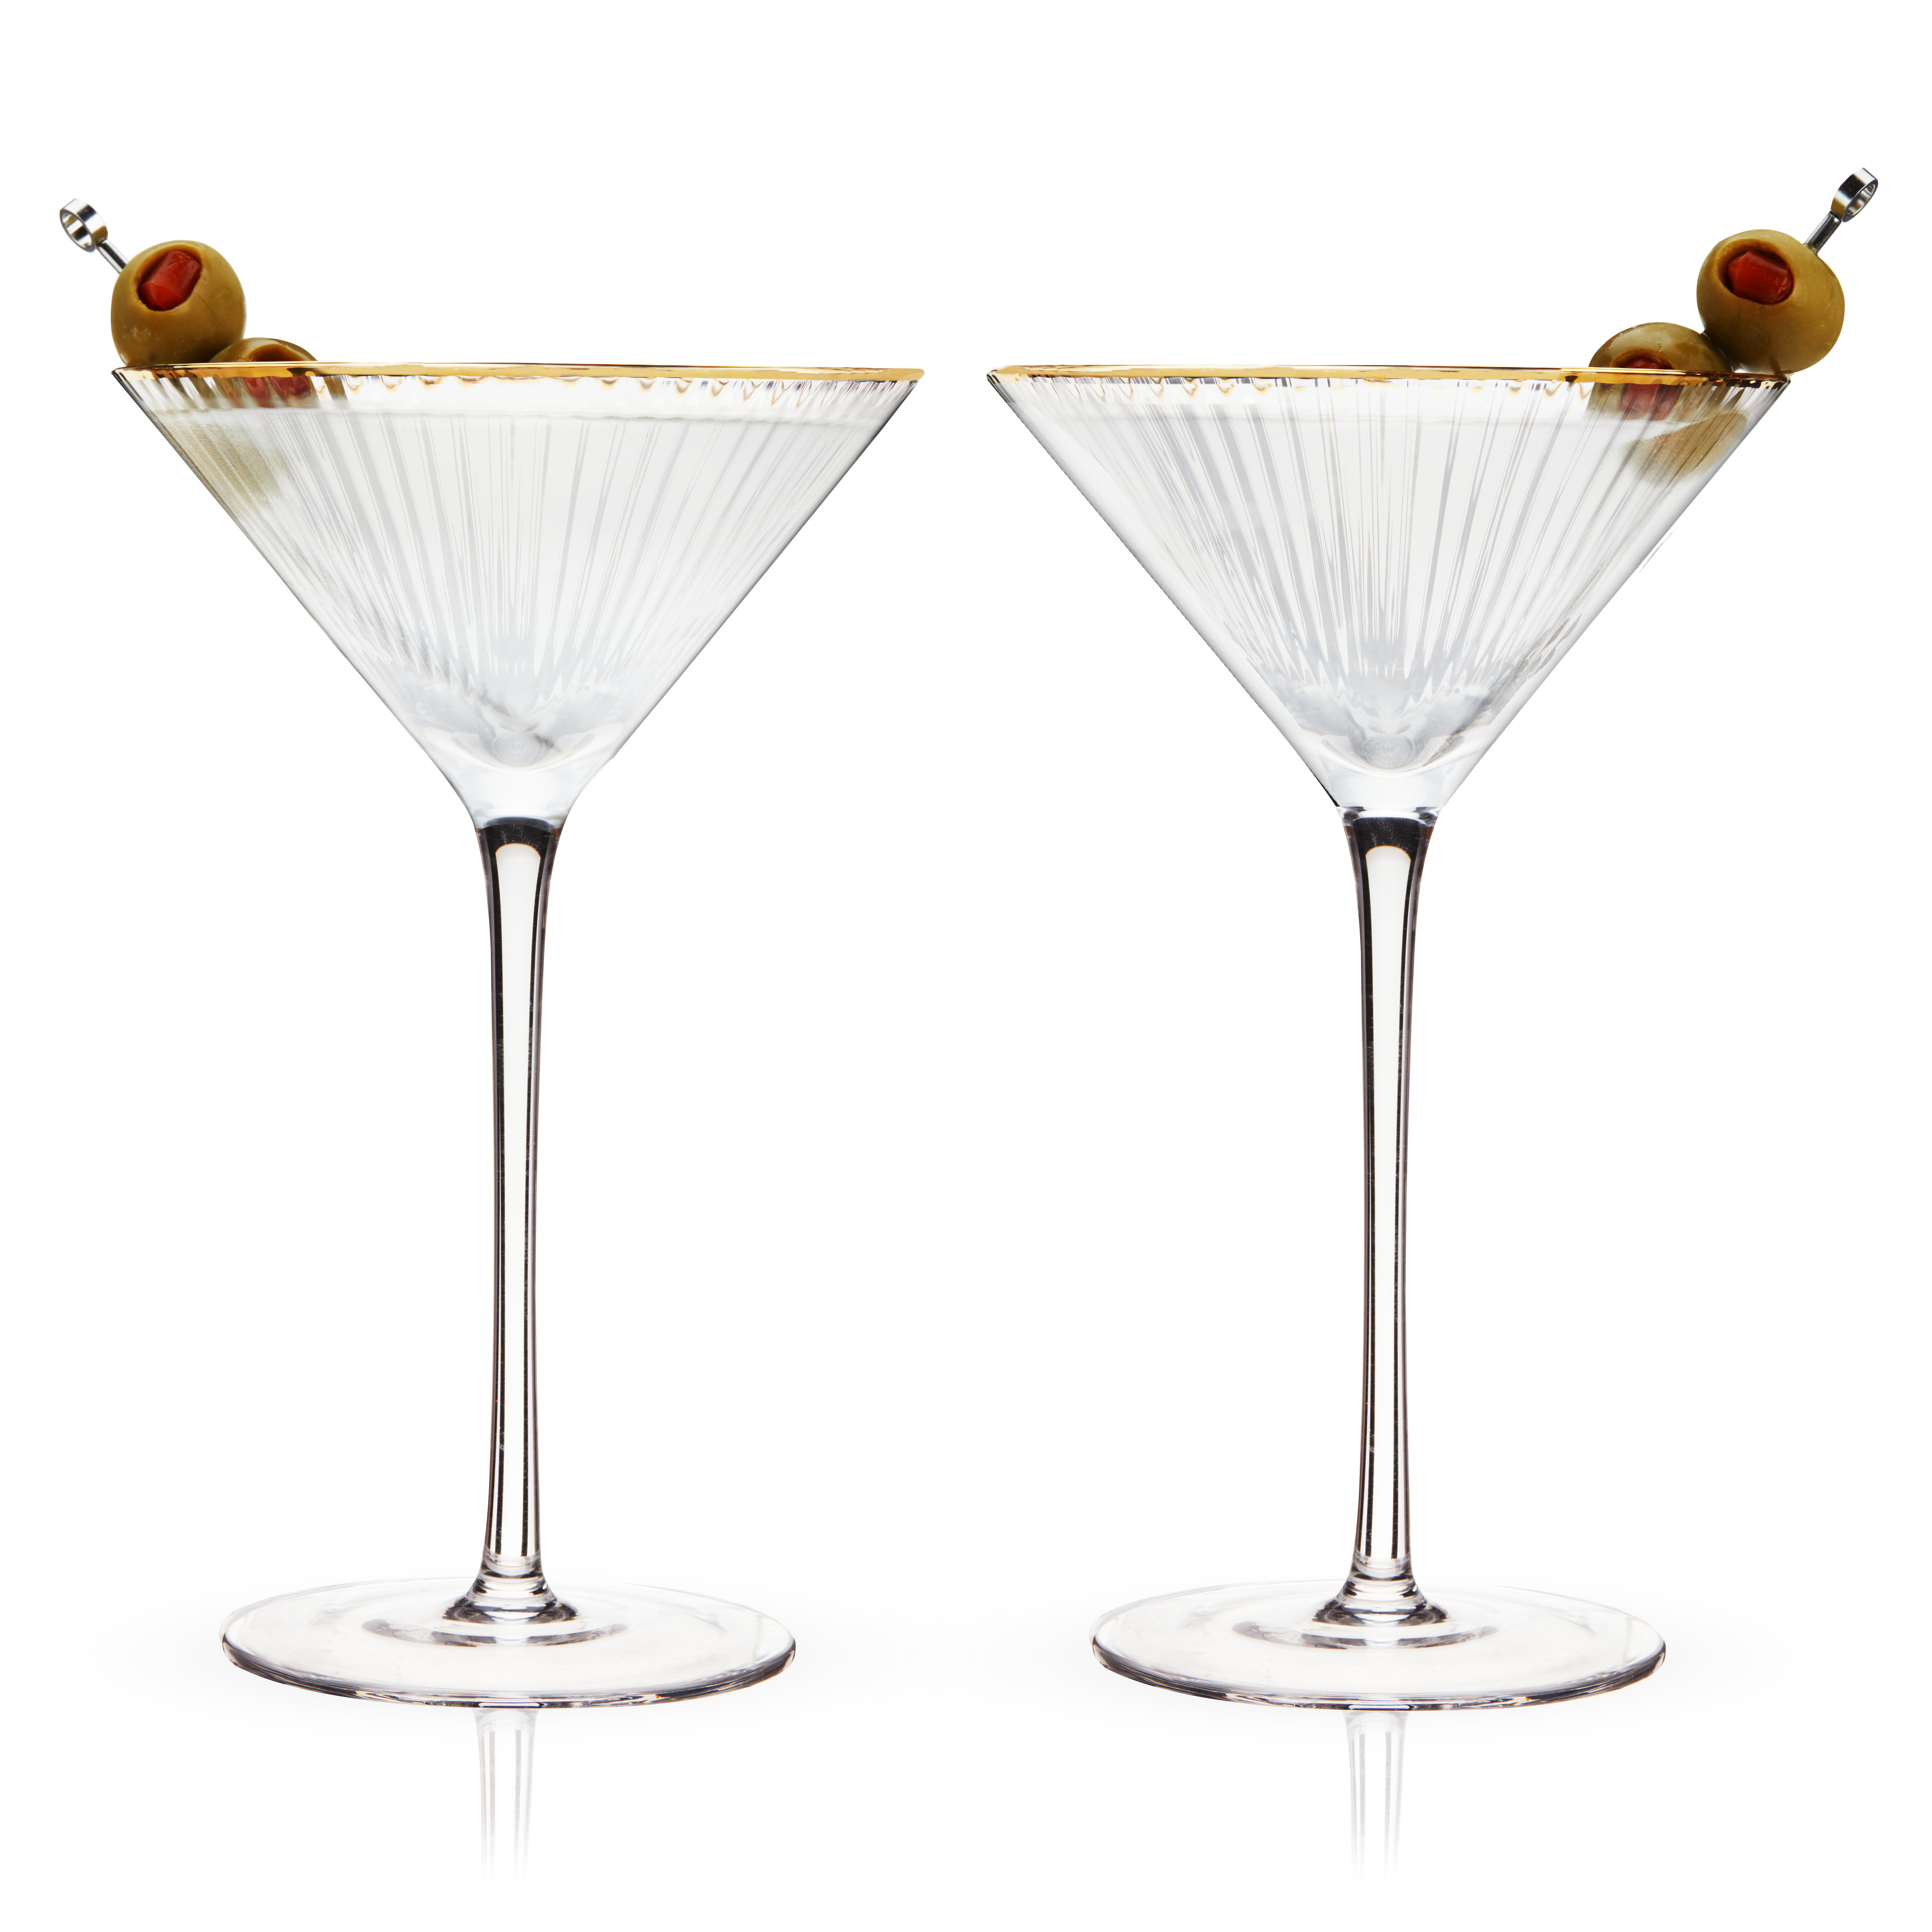 https://assets.wfcdn.com/im/28769656/compr-r85/2443/244311559/viski-meridian-martini-glasses-stemmed-fun-cocktail-glasses-art-deco-ripple-gold-rimmed-crystal-glassware-78oz-set-of-2.jpg